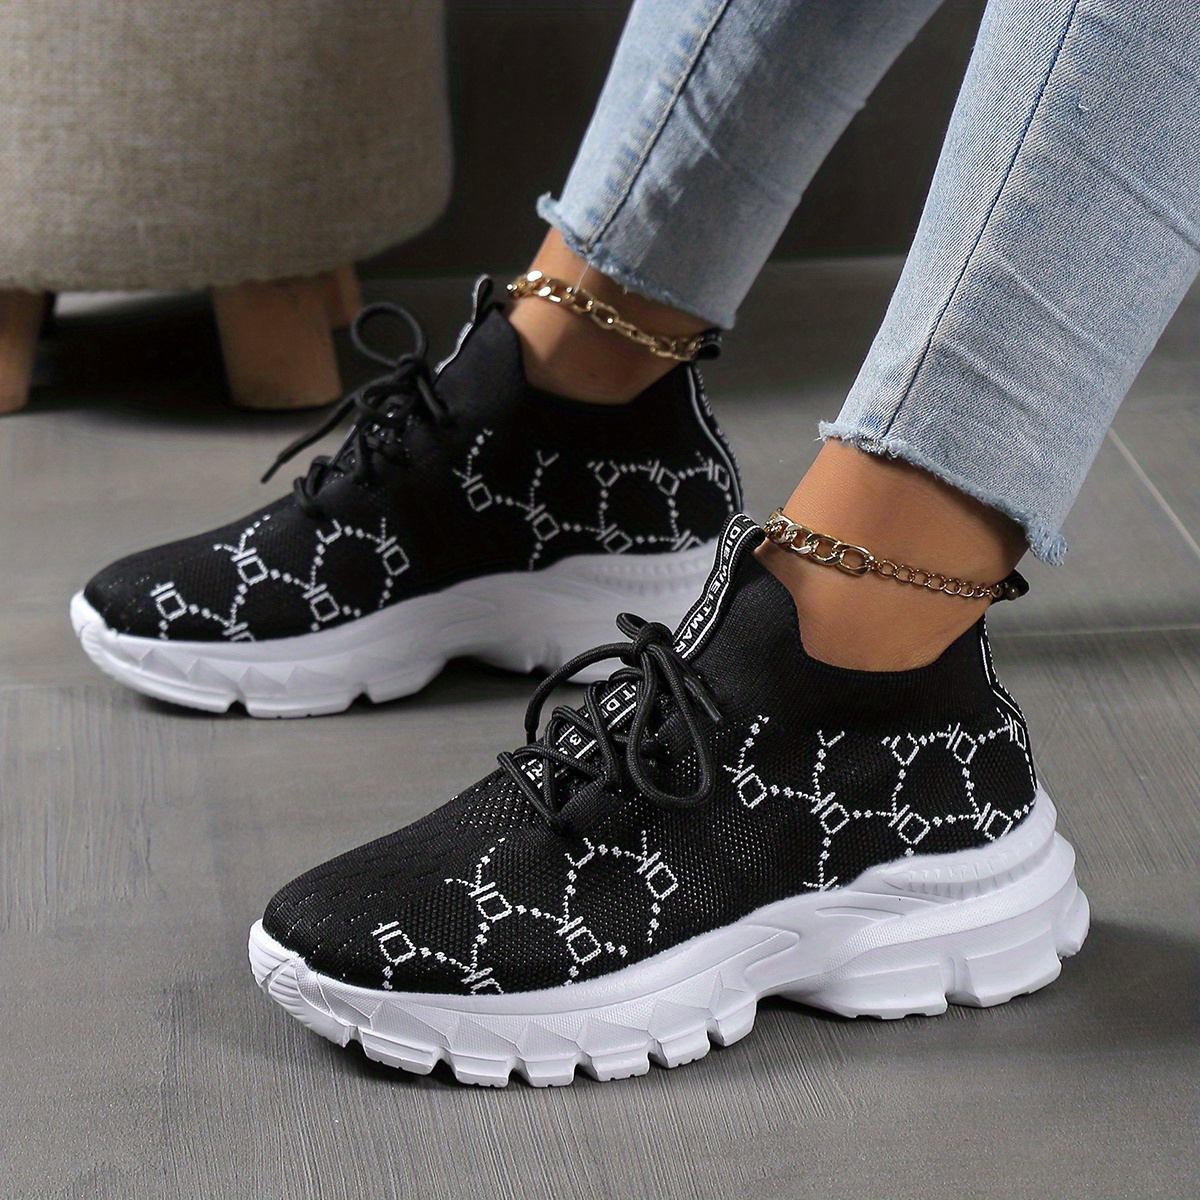 Comfortable Shoes Women White, Women's Black Autumn Shoes